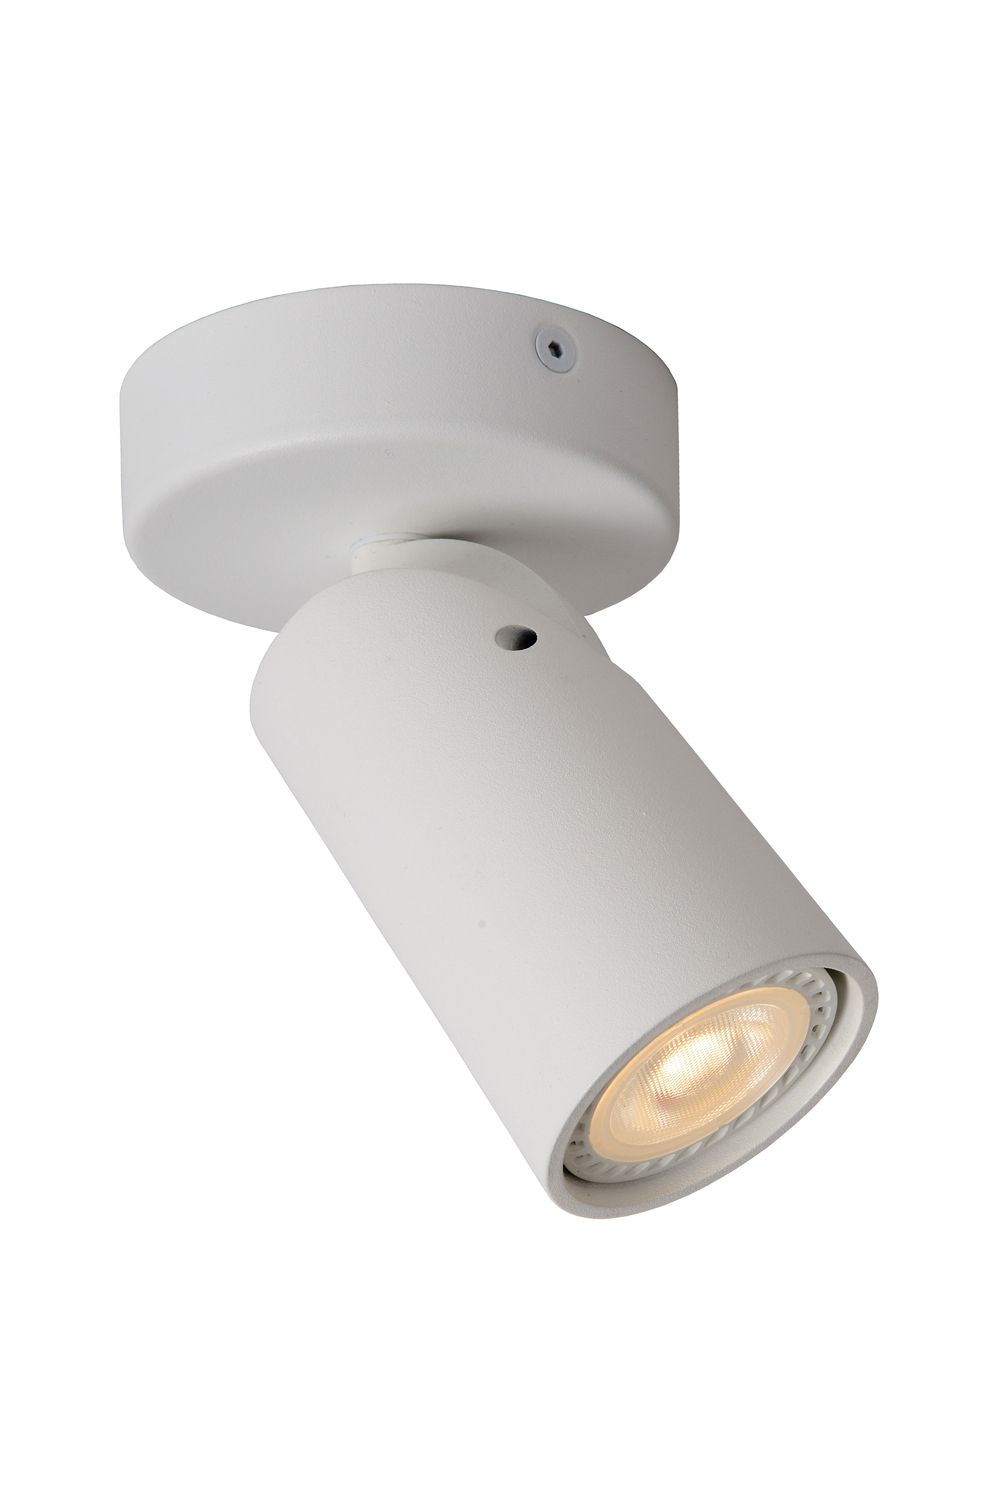 Ampoule spot LED GU10 blanc chaud 320 lm grise 5 W LUCIDE